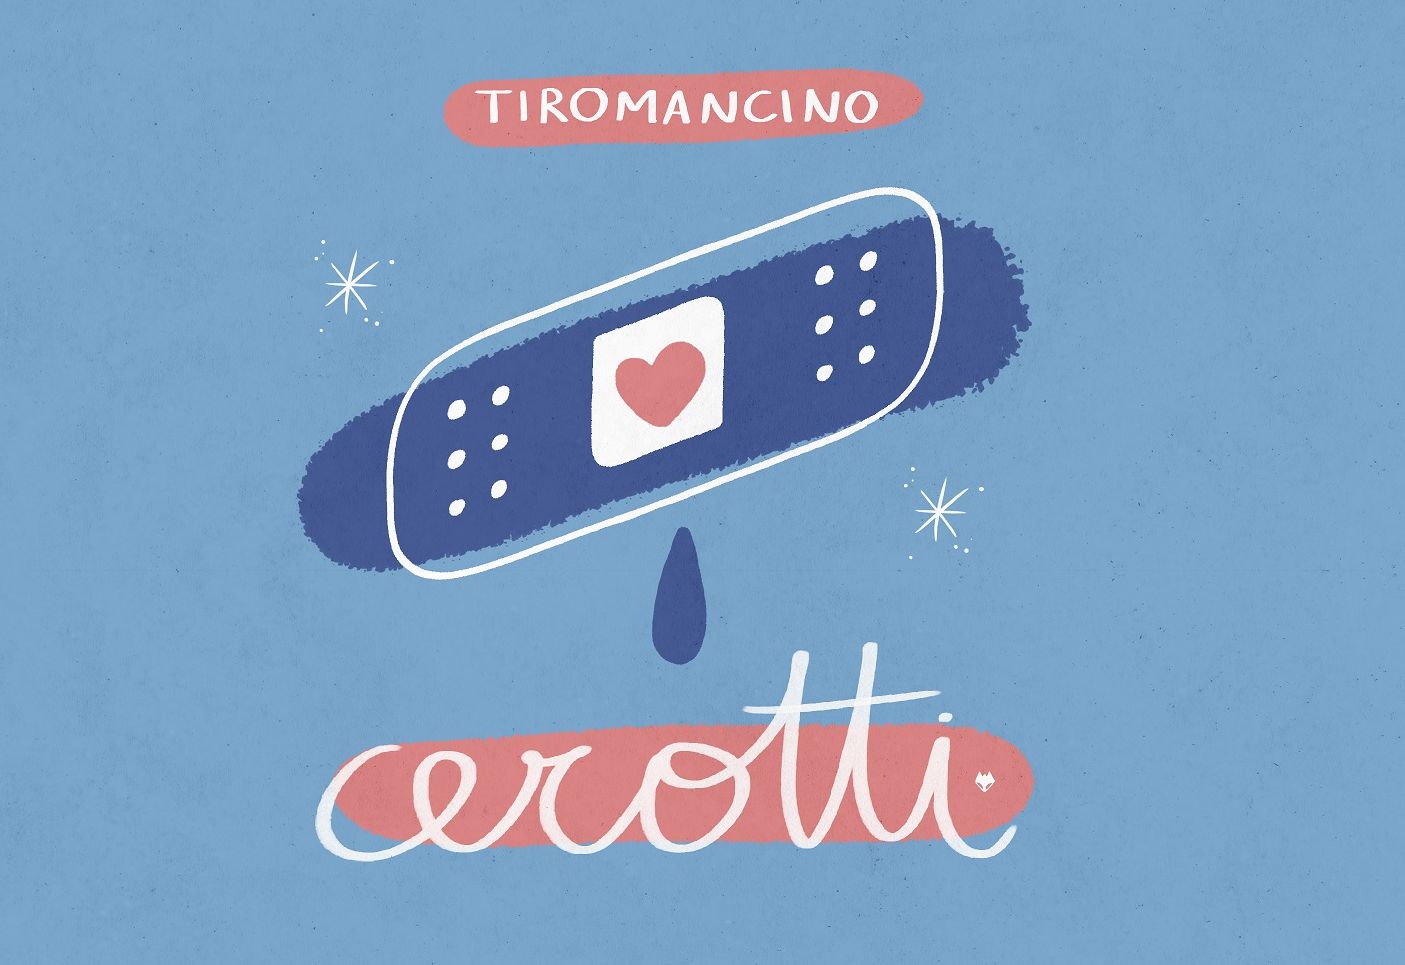 Tiromancino, arriva il nuovo singolo “Cerotti”